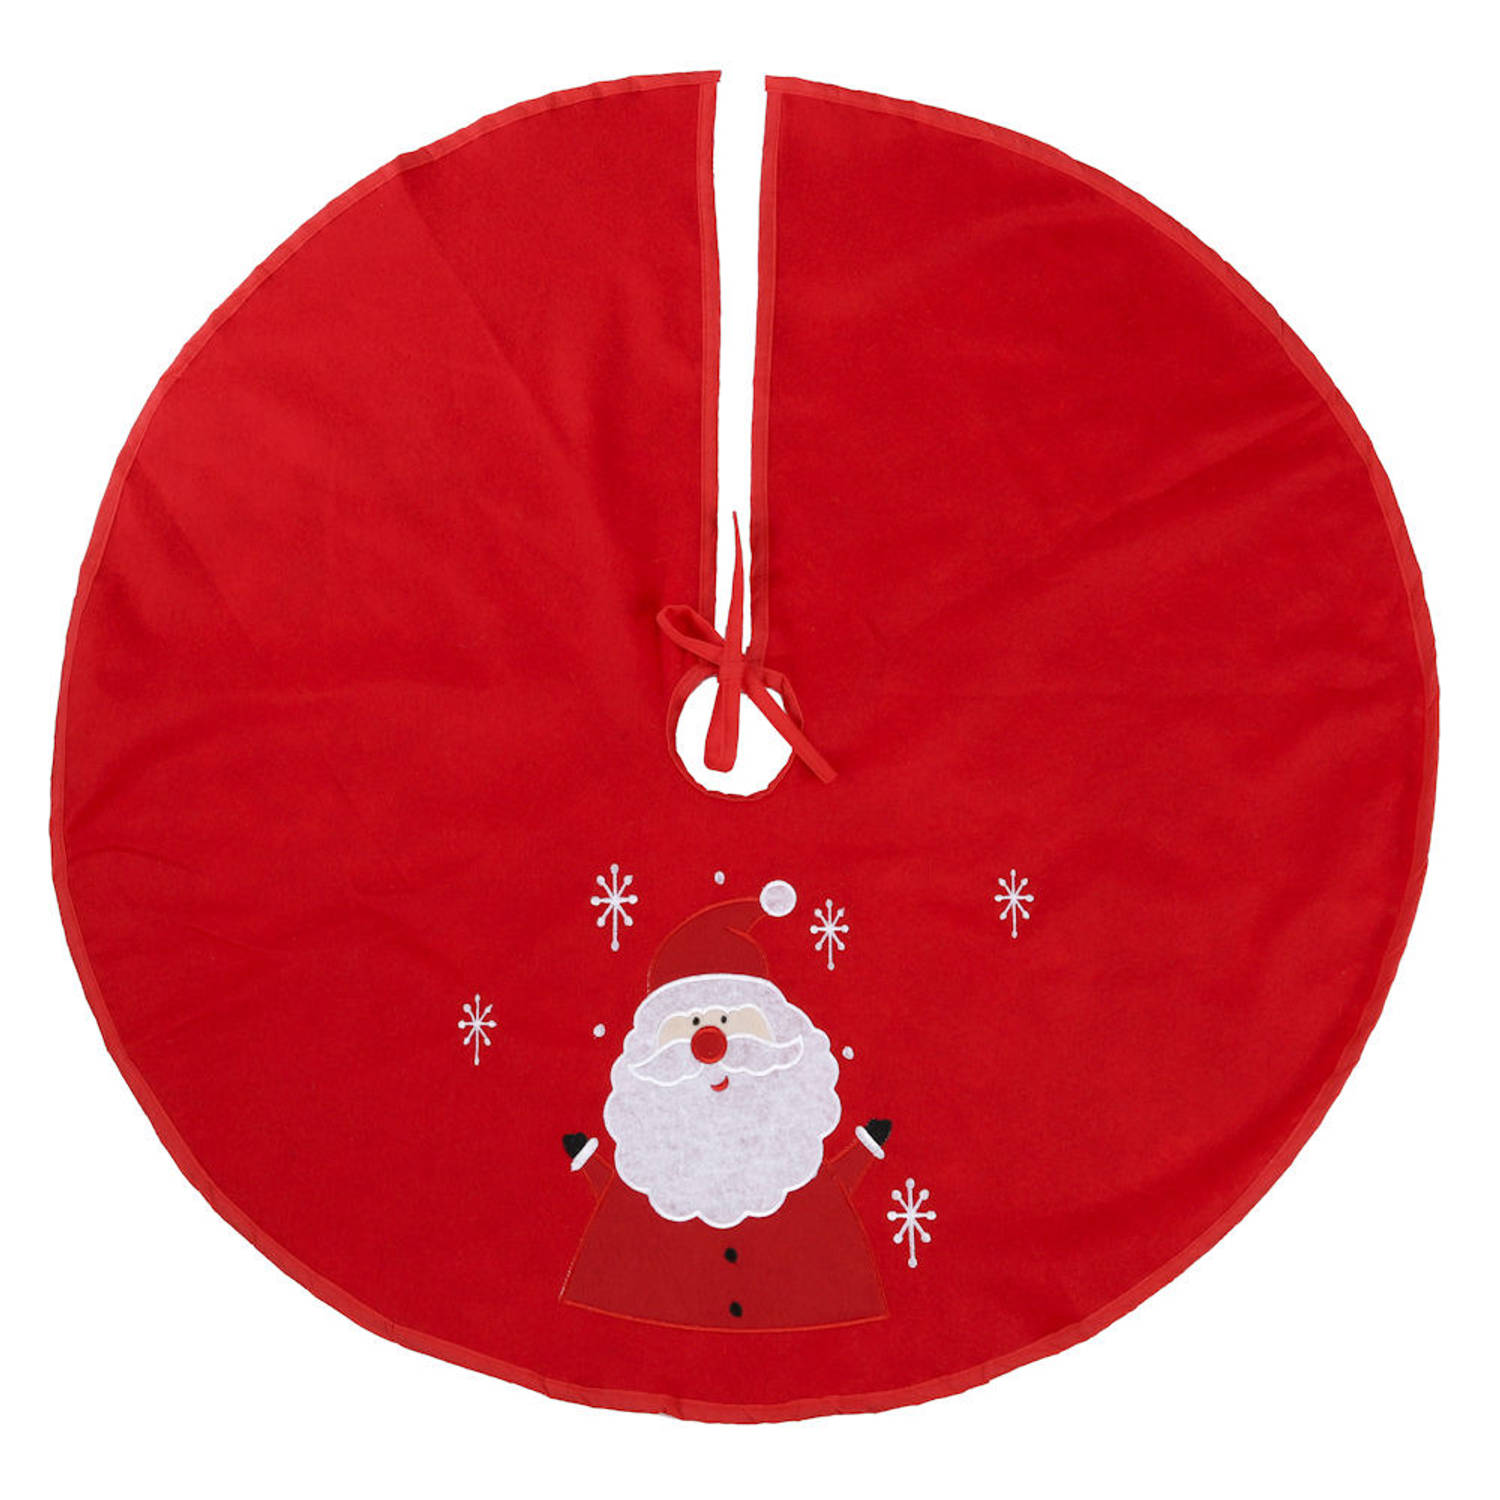 Decopatent® Kerstboomkleed Rood met Kerstman - Kerstboomrok voor